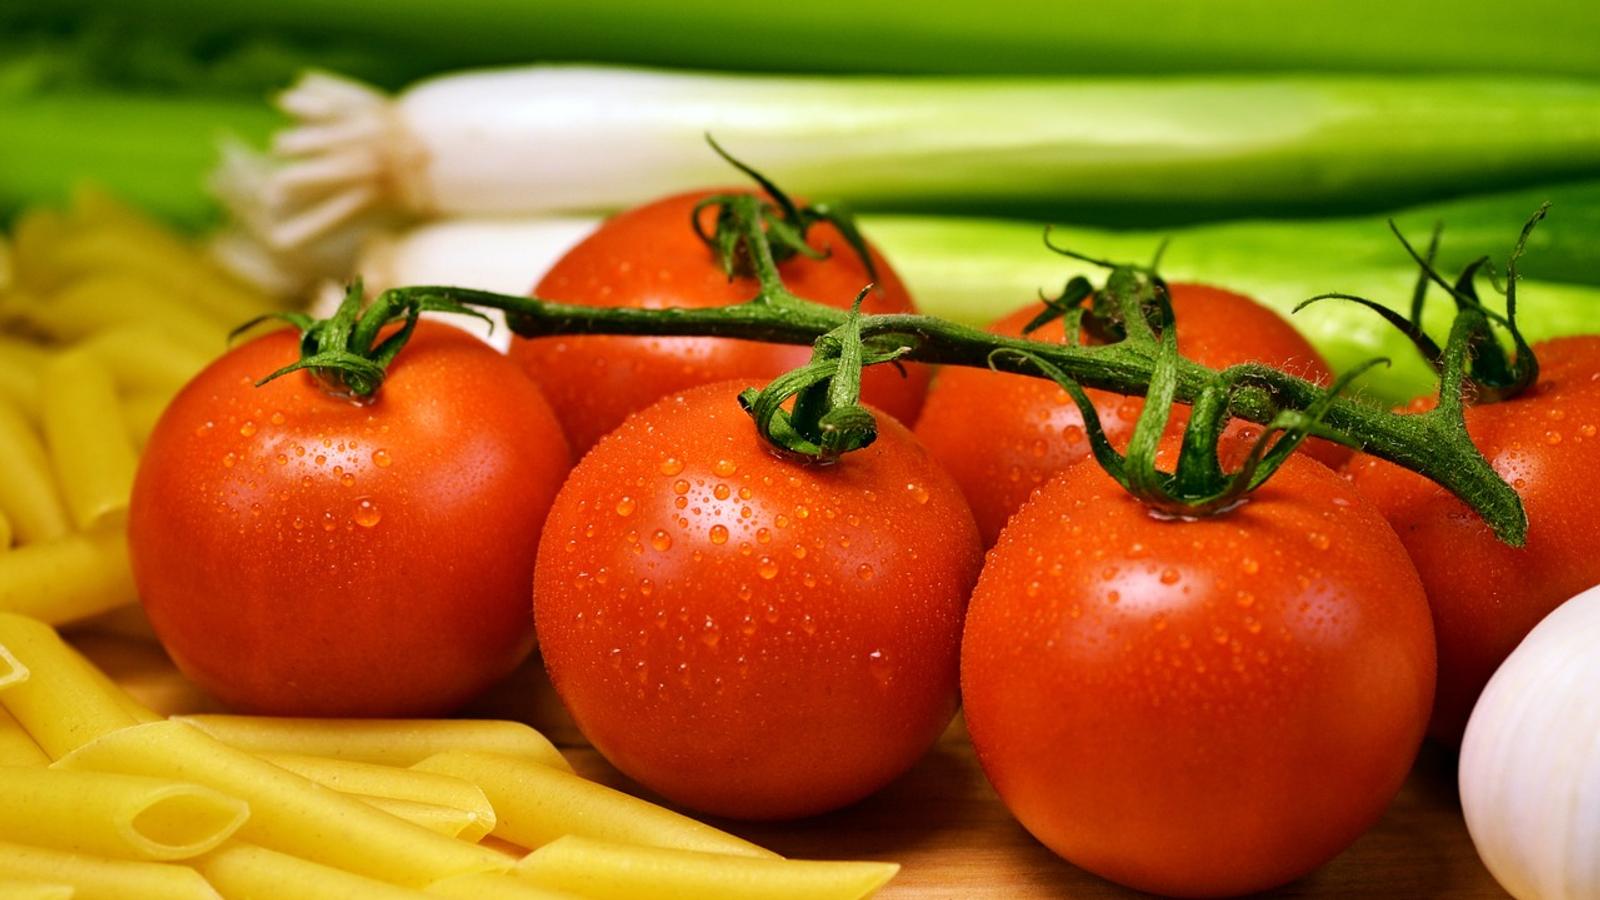 Le secret d'une vraie bonne sauce tomate? Il suffit de râper vos tomates!